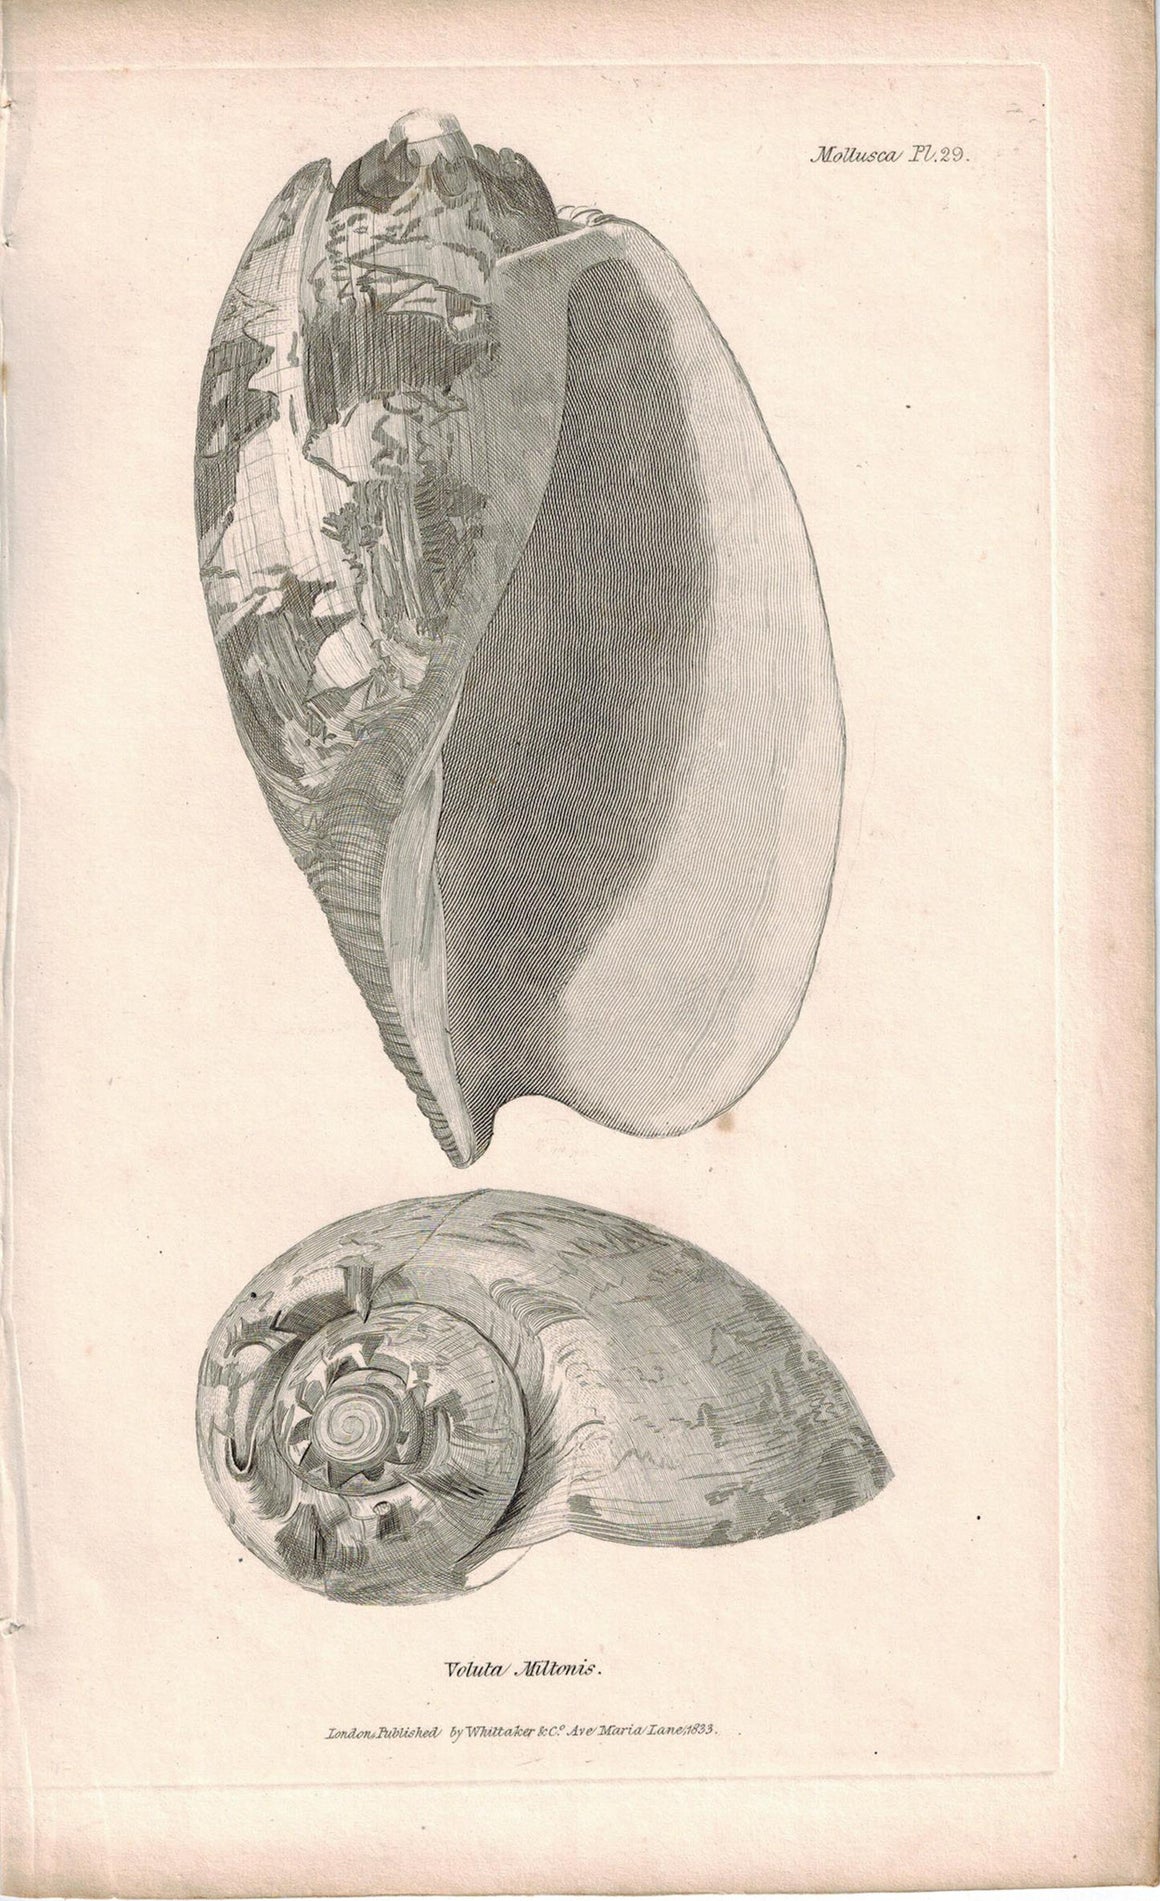 Sea Shell Mollusca Antique cuvier Print 1834 Pl 29